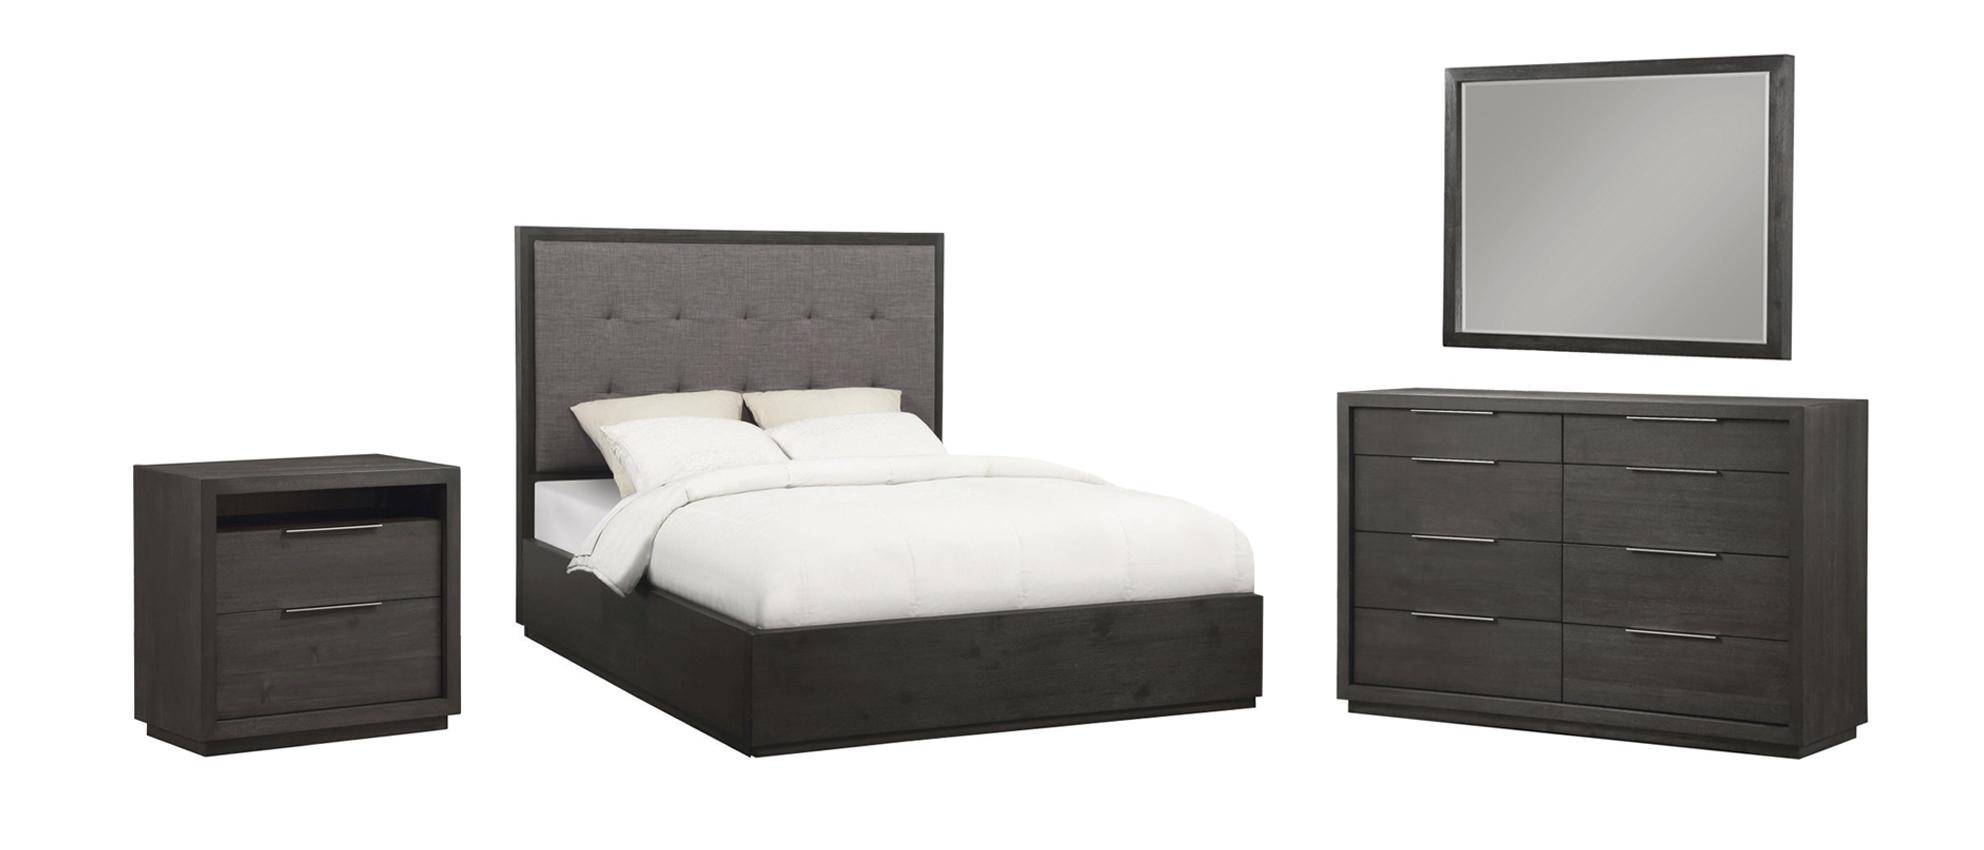 Modus Furniture OXFORD Platform Bedroom Set